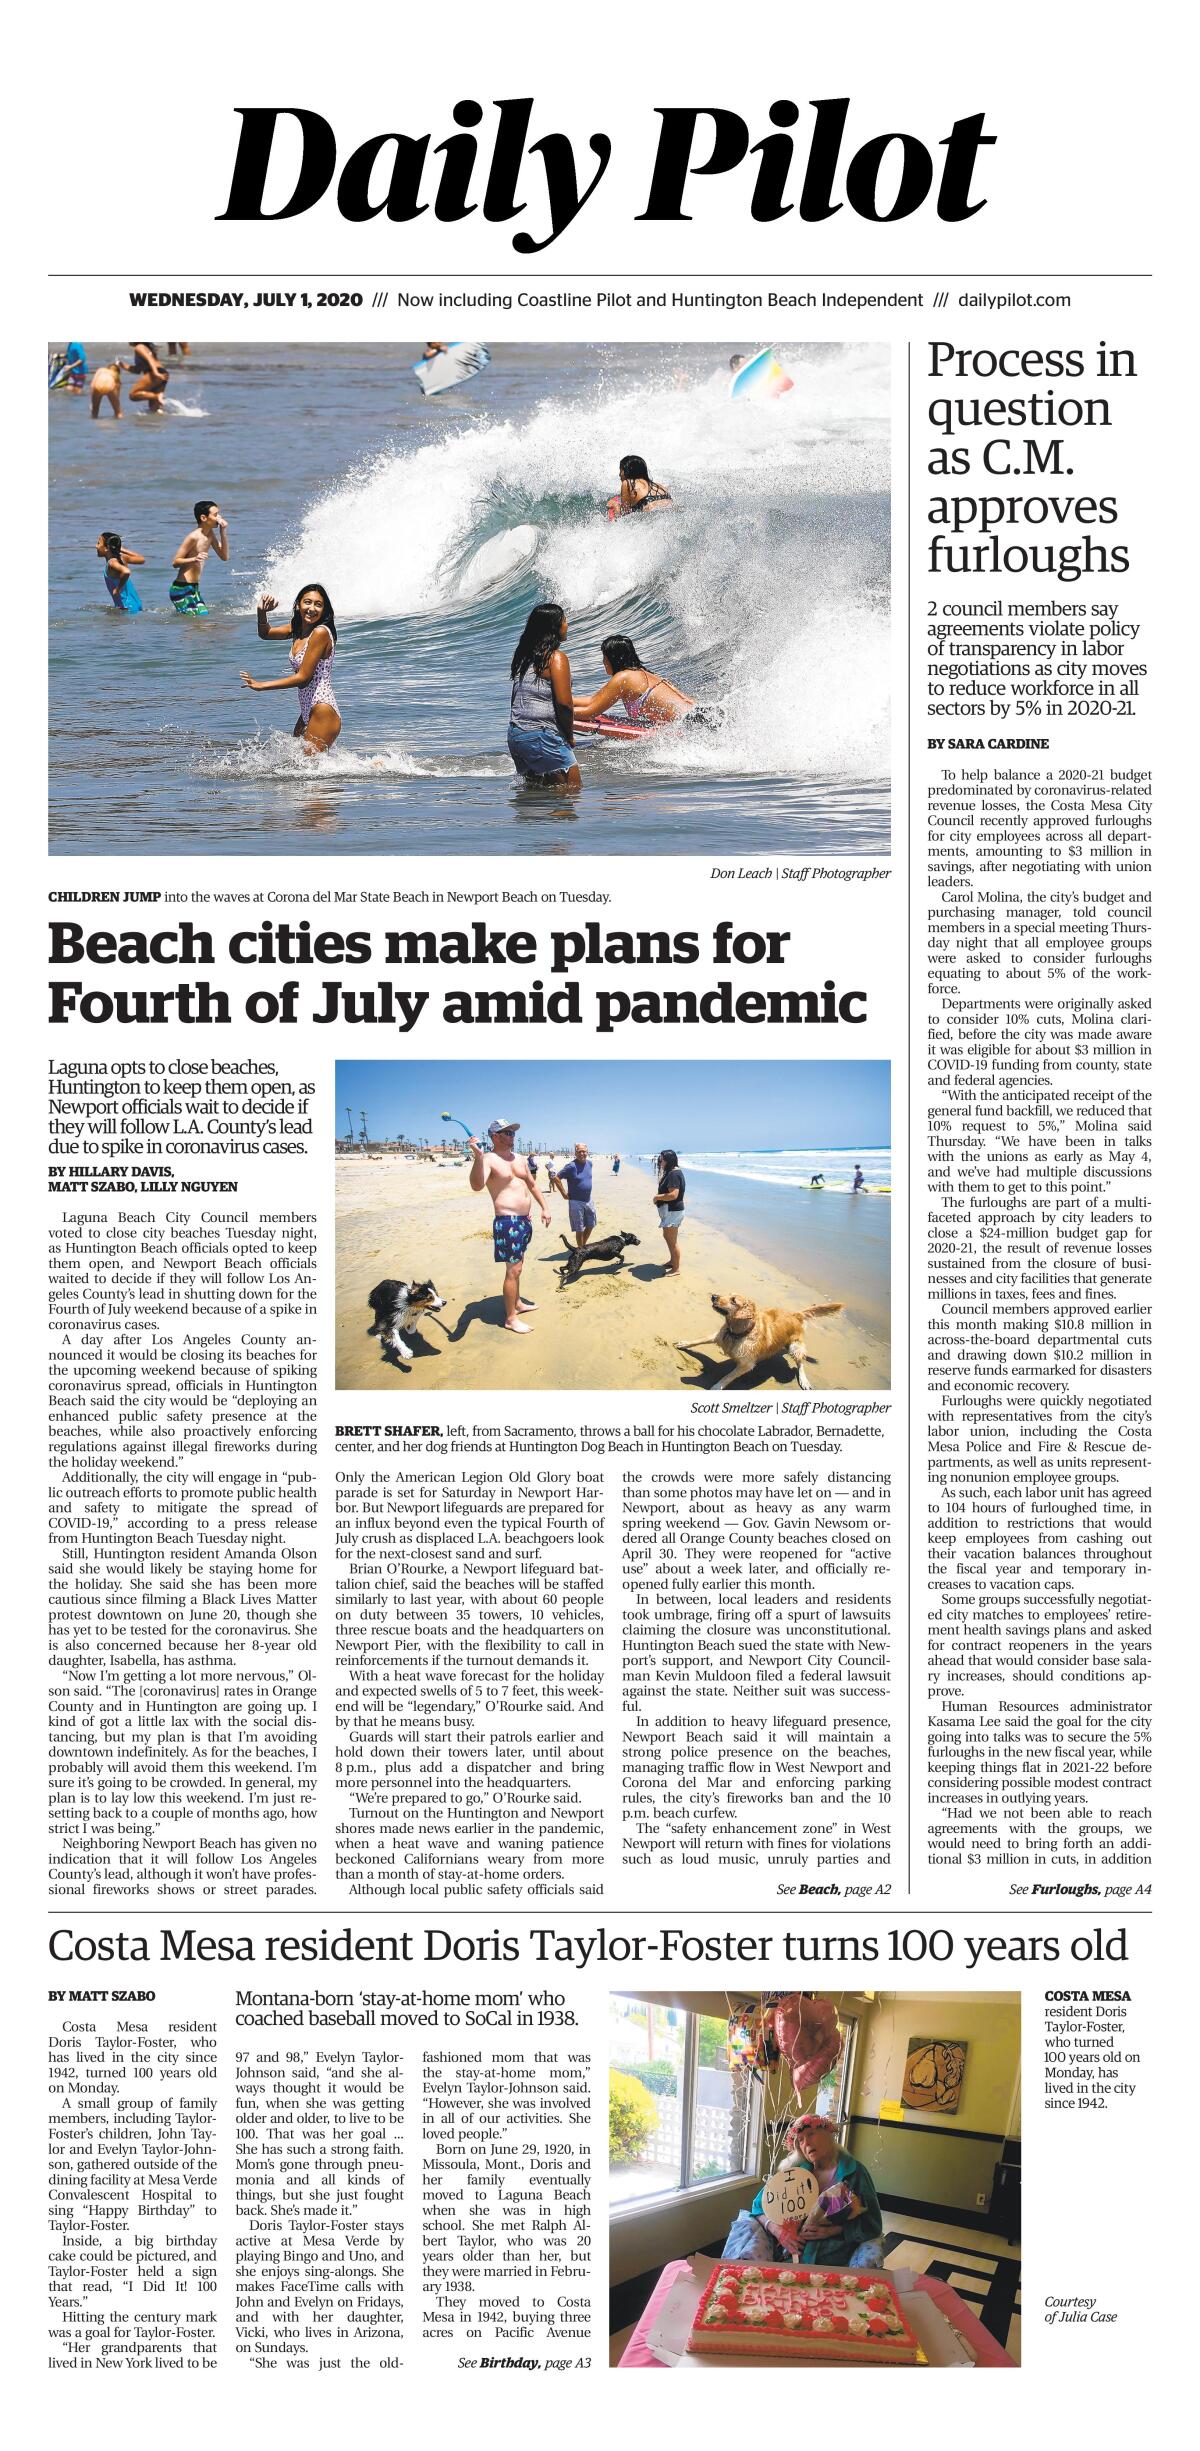 Daily Pilot e-Newspaper: Wednesday, July 1, 2020 Cover